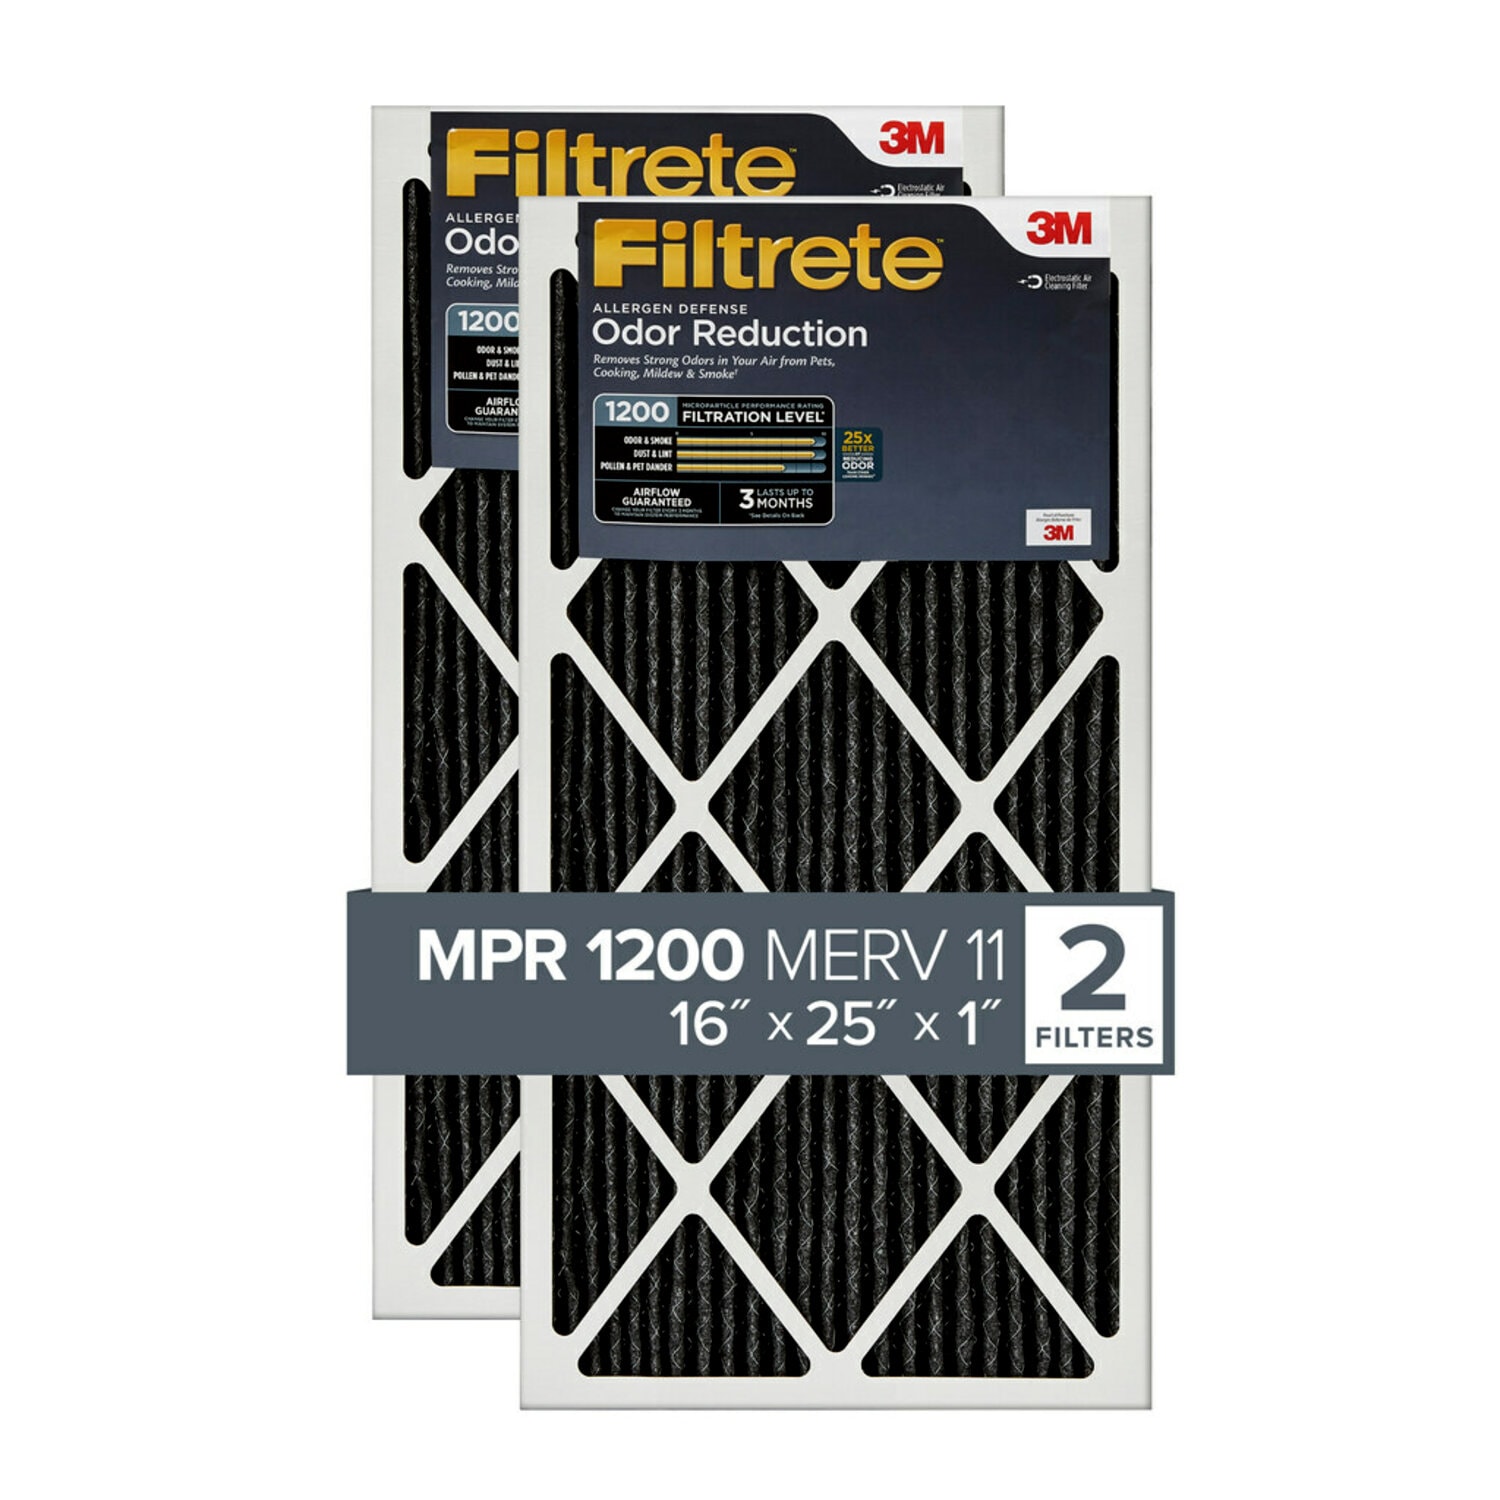 7100098653 - Filtrete Allergen Defense Odor Reduction Filter AOR01-2P-6E-NA, MPR
1200, 16 in x 25 in x 1 in (40,6 cm x 63,5 cm x 2,5 cm), 2/pk